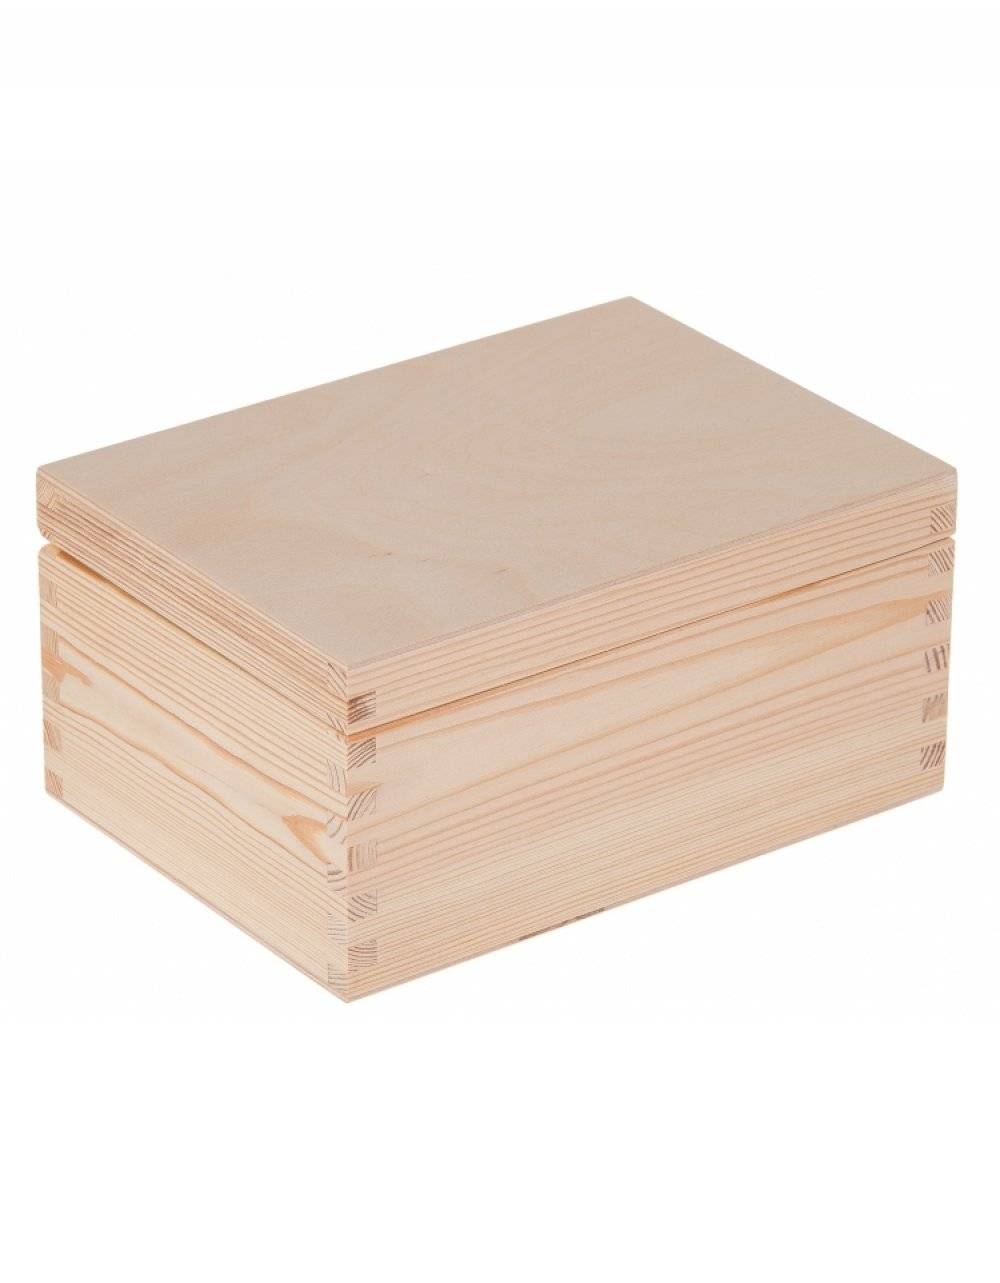 Přírodní dřevěná krabička 22x16x10 cm